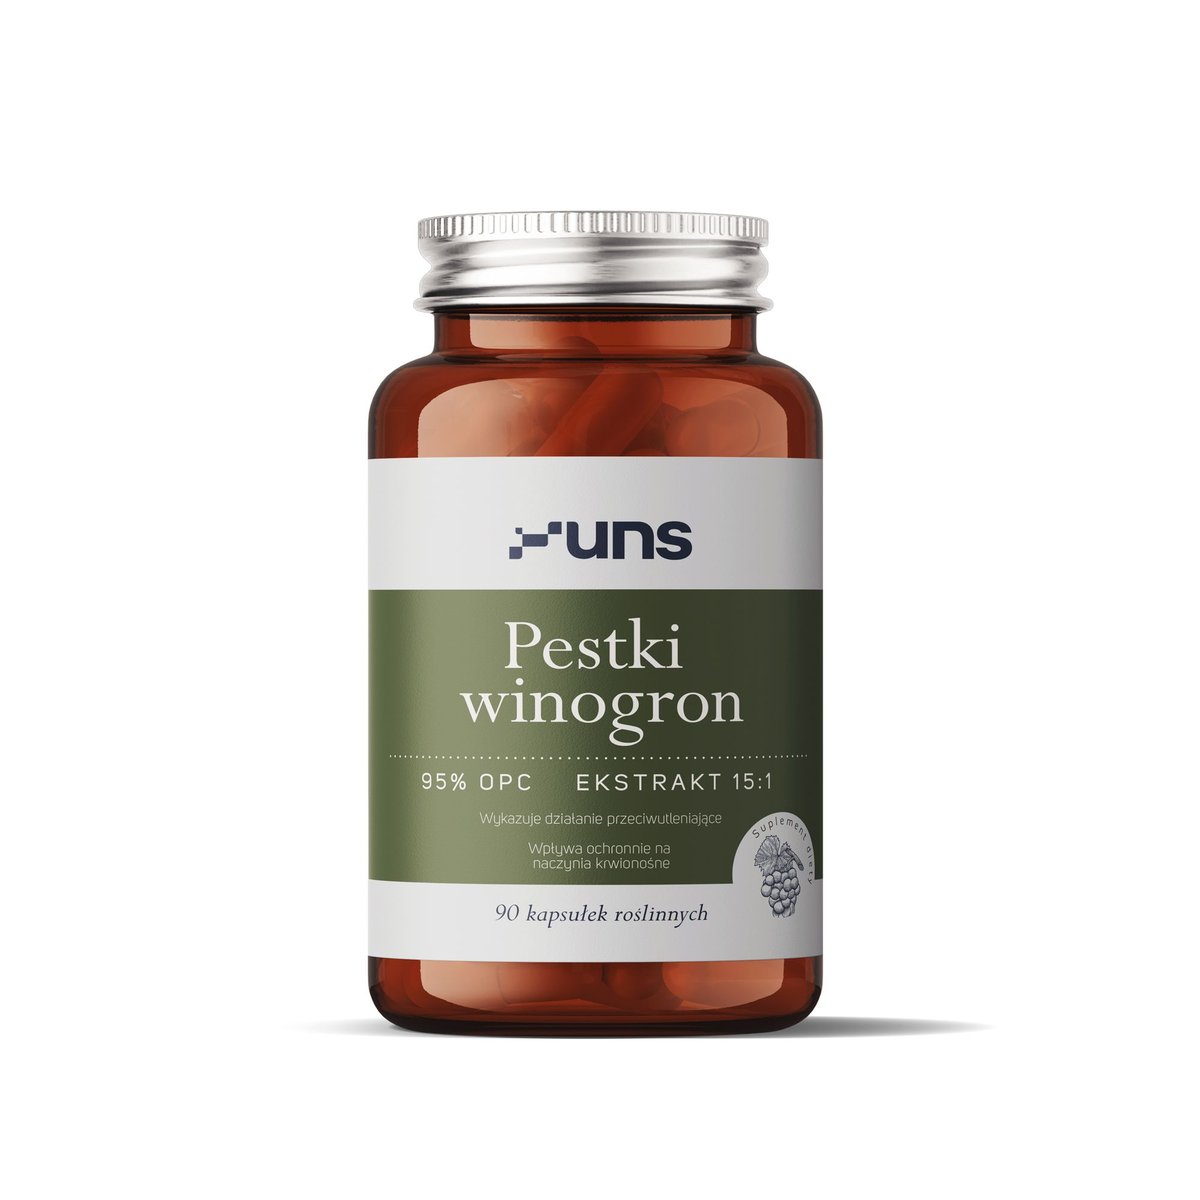 Фото - Вітаміни й мінерали UNS PESTKI WINOGRON 95 OPC Suplement diety, 90 kaps. 